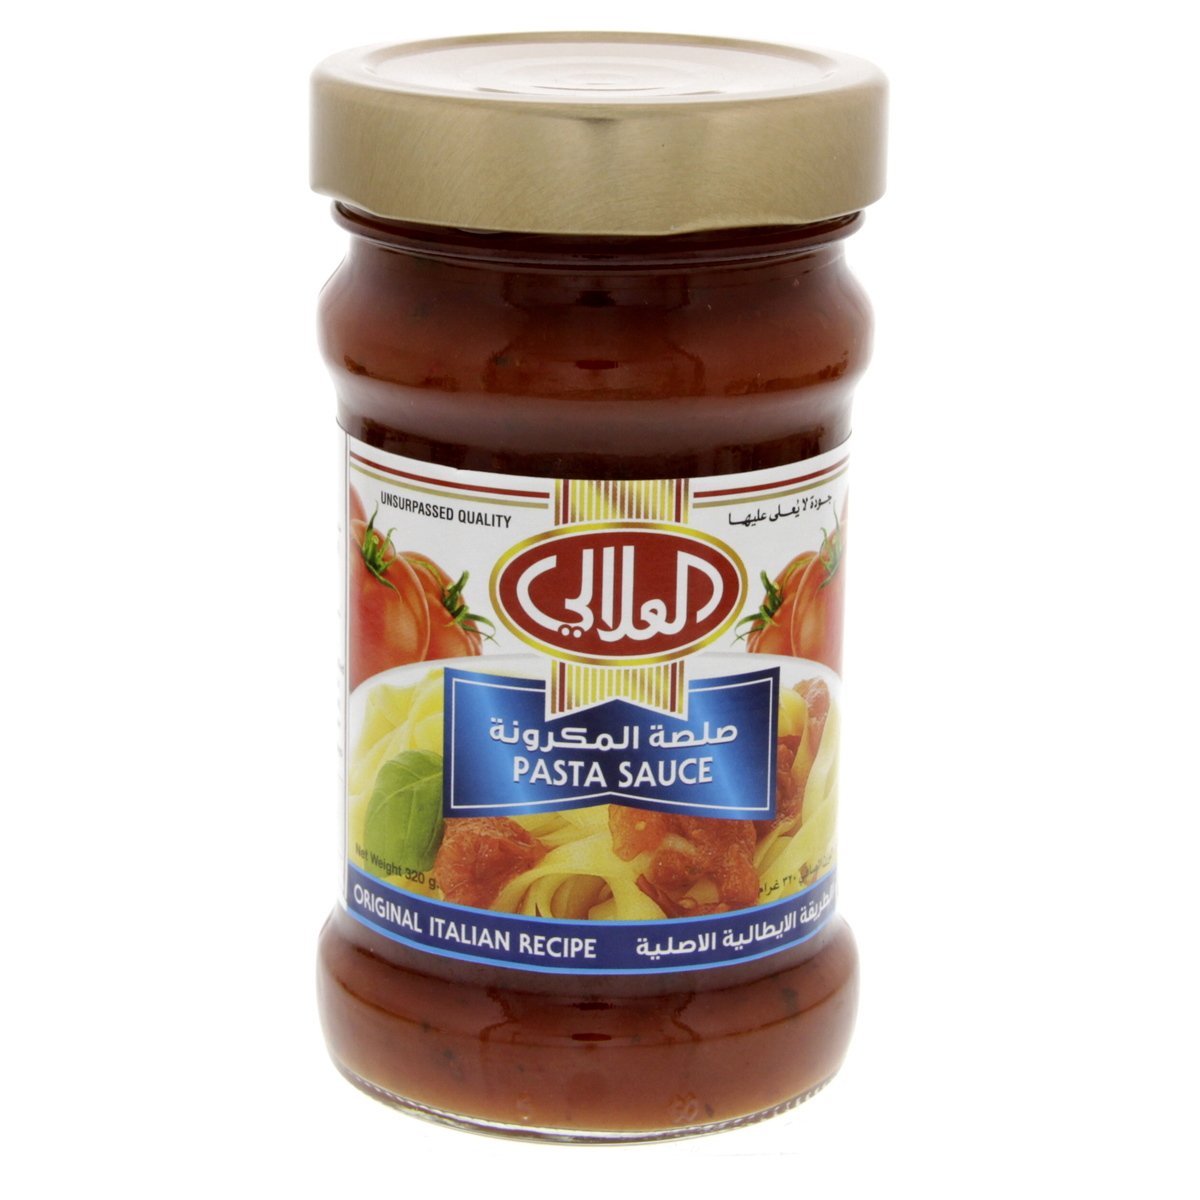 اشتري قم بشراء العلالي صلصة المكرونة الأصلية ٣٢٠ جم Online at Best Price من الموقع - من لولو هايبر ماركت Cooking Sauce في الامارات